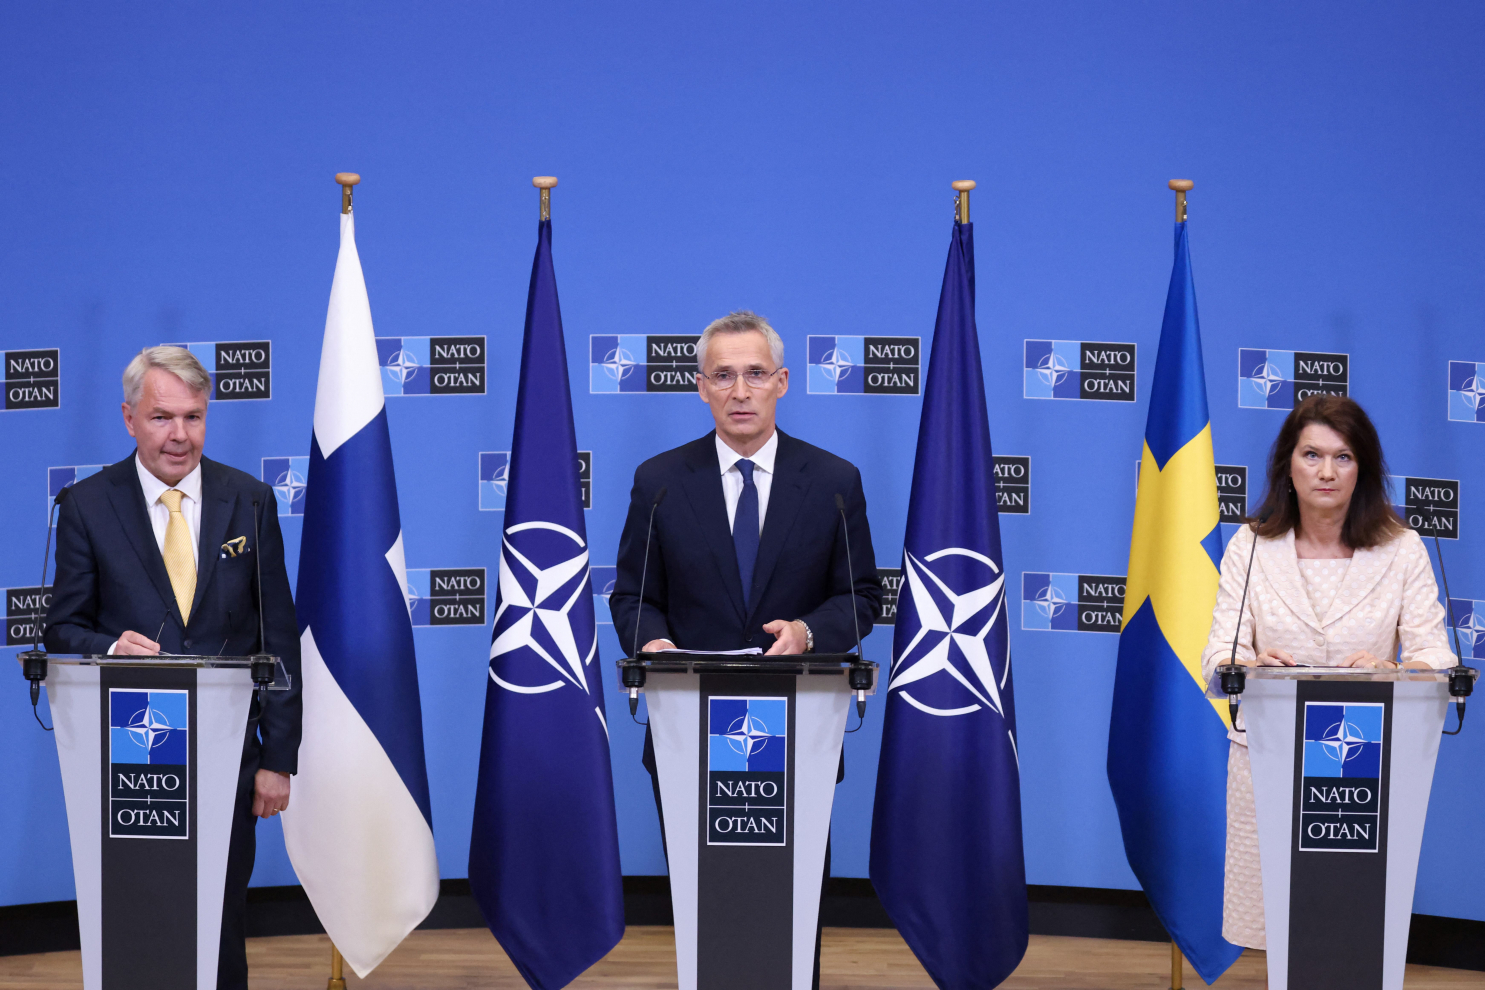 Chào mừng Phần Lan và Thụy Điển đến với NATO